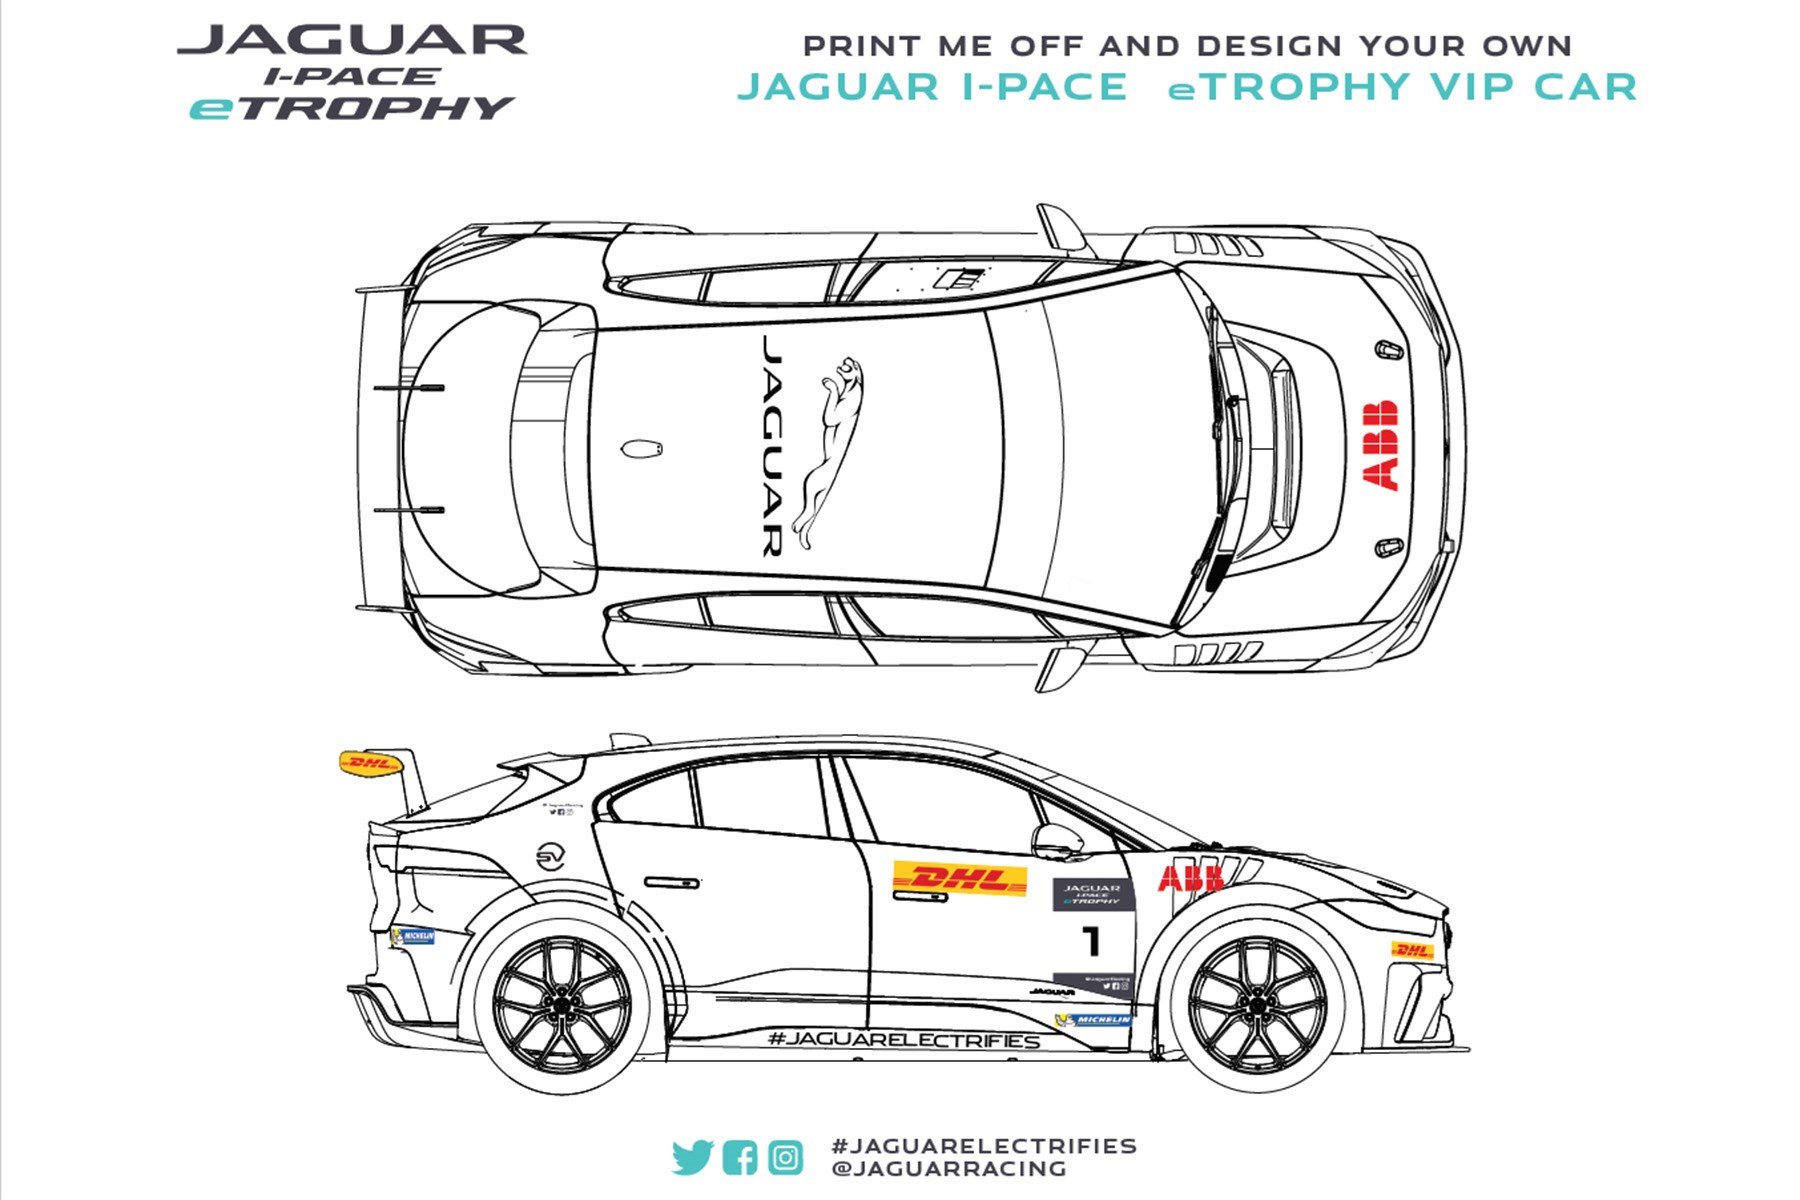 jaguar car coloring pages